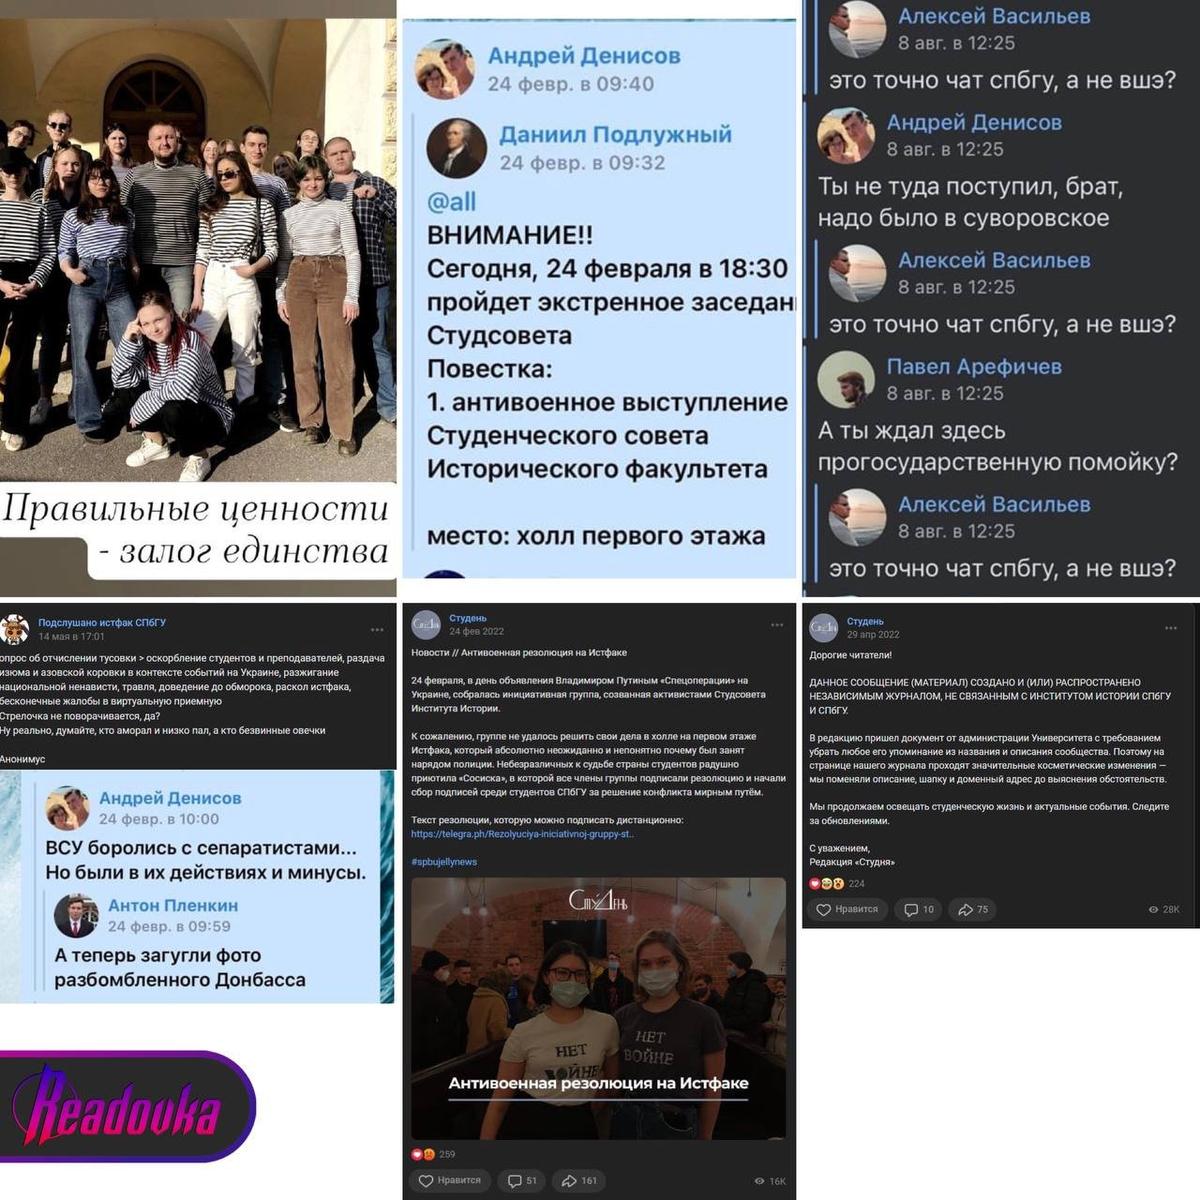 Скриншоты антивоенных сообщений студентов, распространенные изданием Readovka